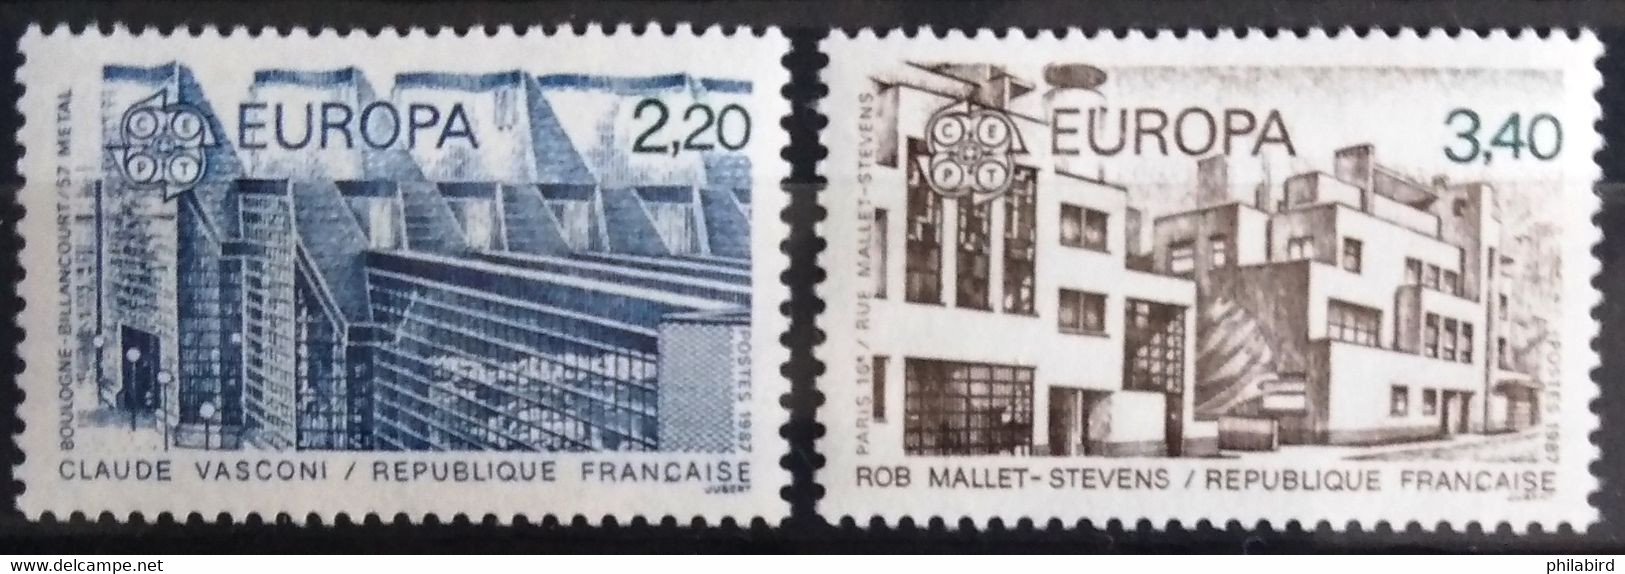 EUROPA 1987 - FRANCE                   N° 2471/2472                        NEUF** - 1987